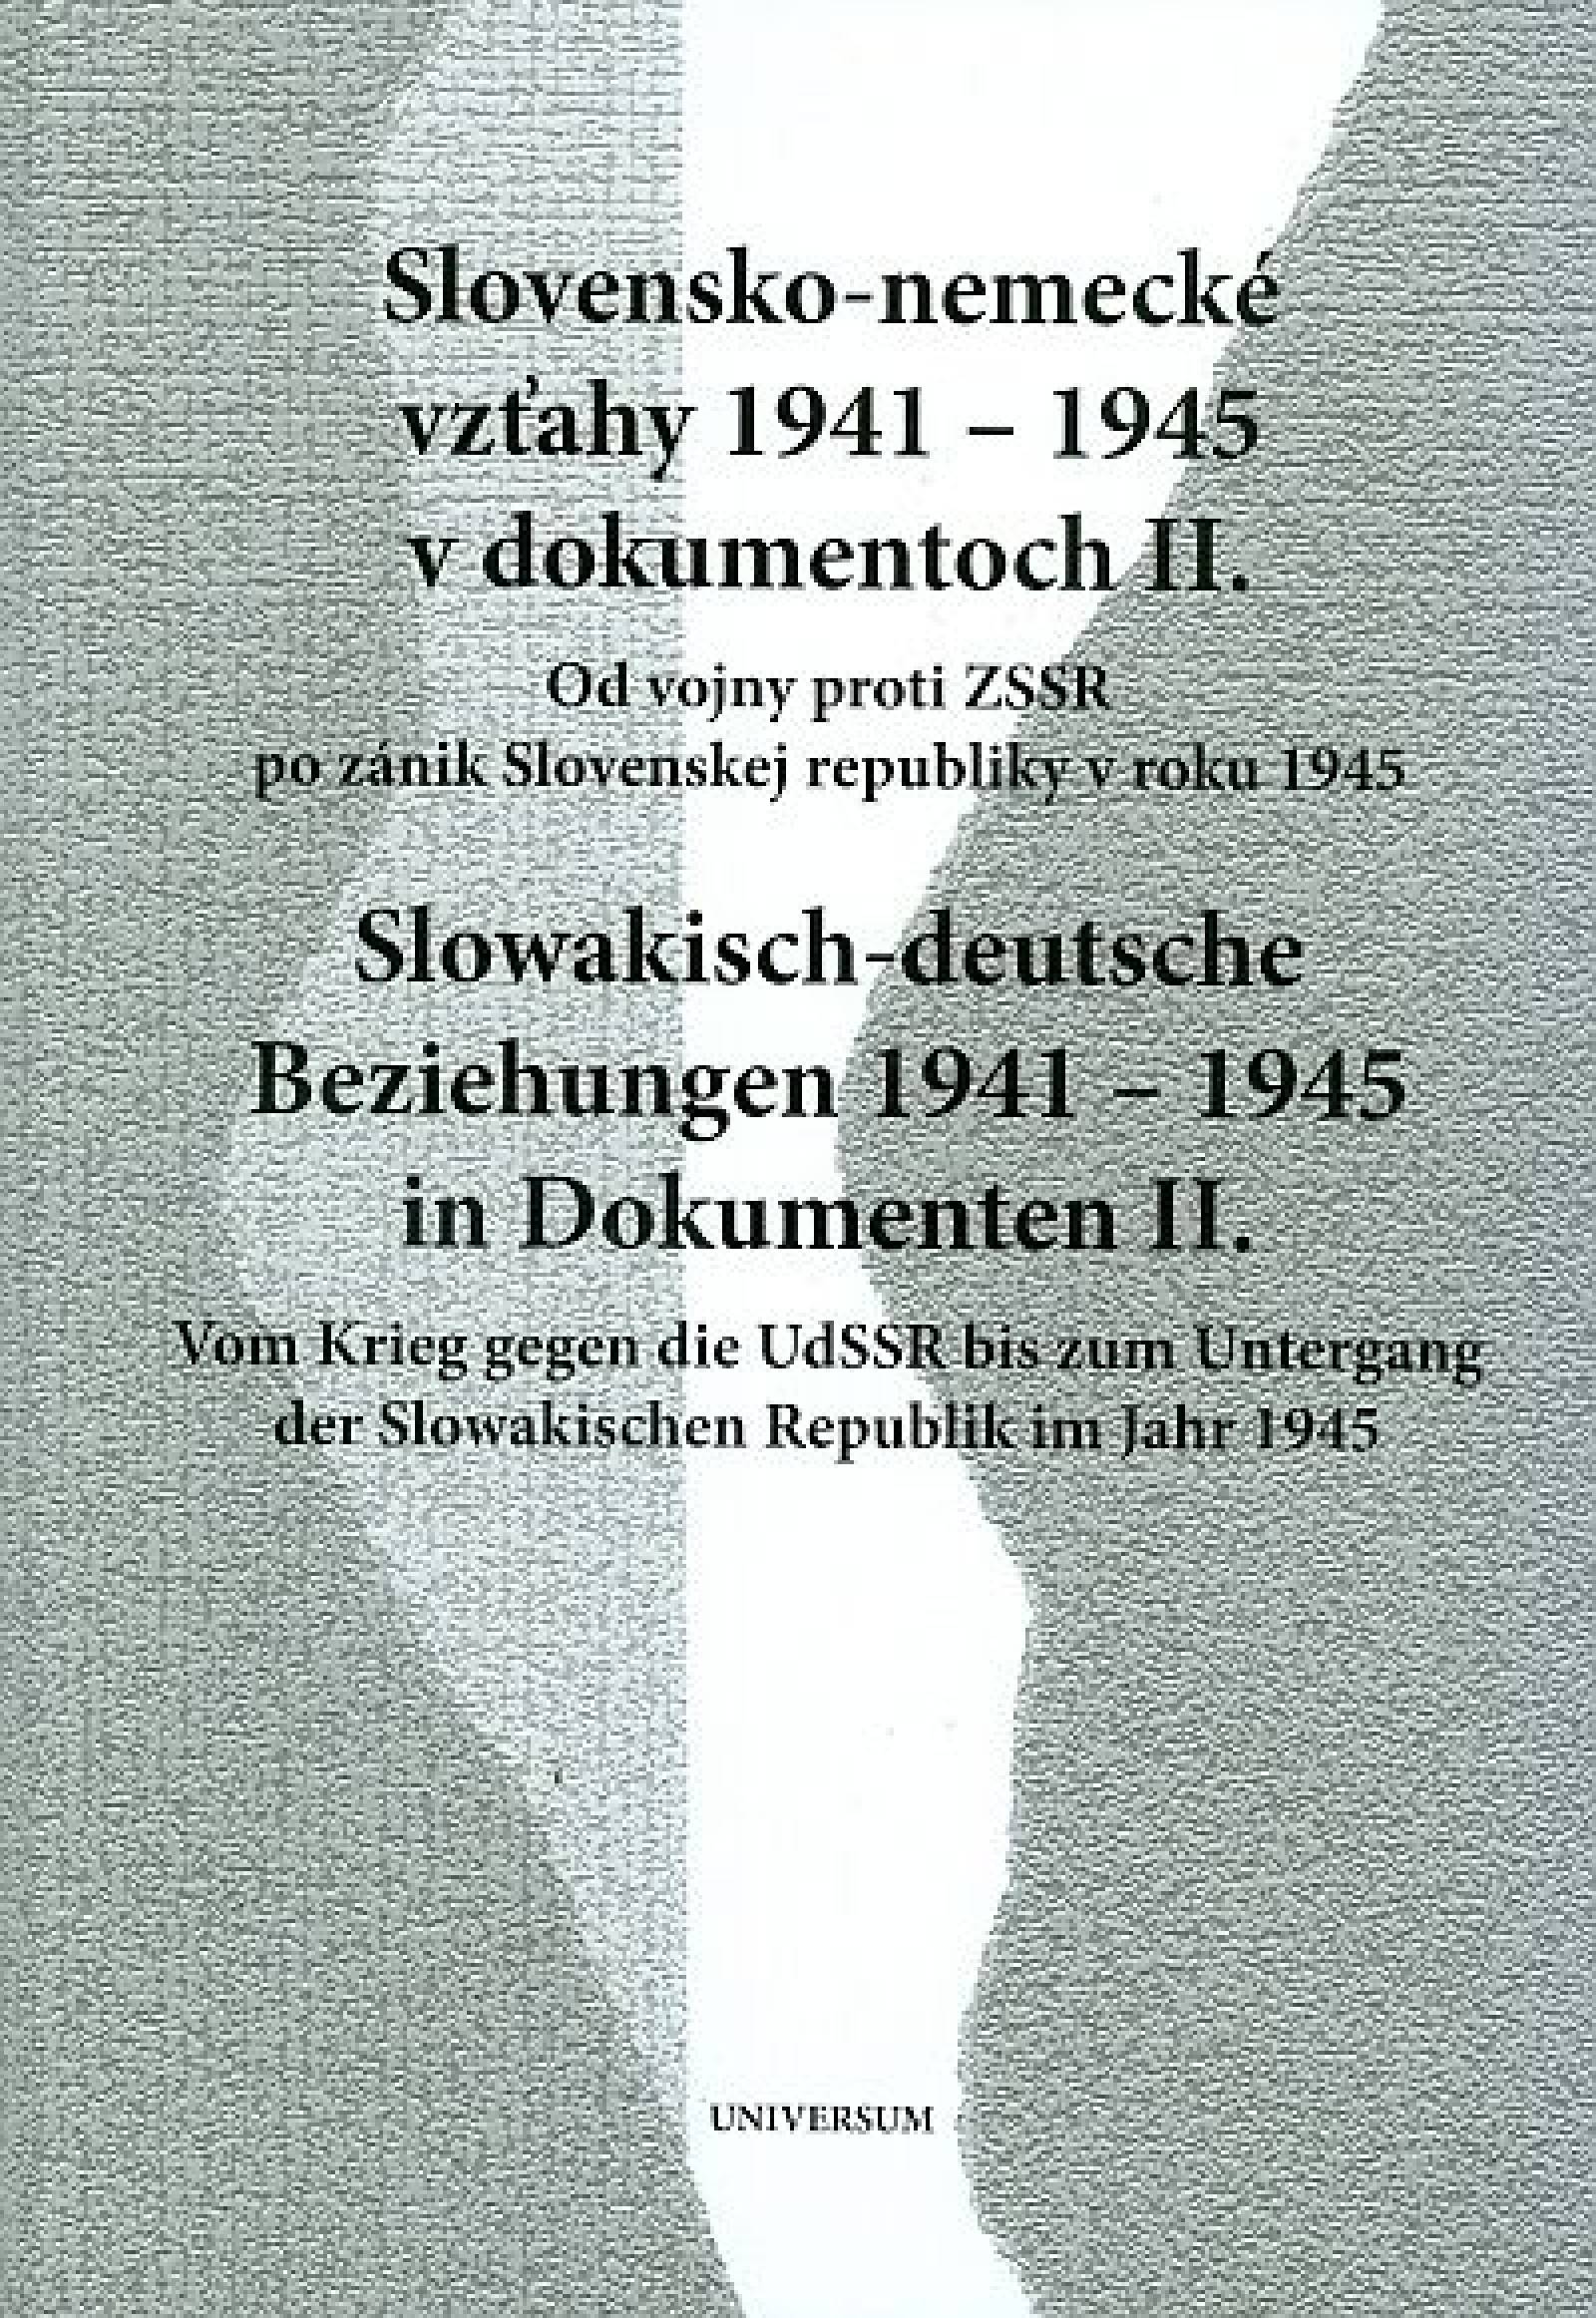 Slovensko-nemecké vzťahy 1941 - 1945 v dokumentoch II. (Slowakisch-deutsche Beziehungen 1941 - 1945 in Dokumenten II.)